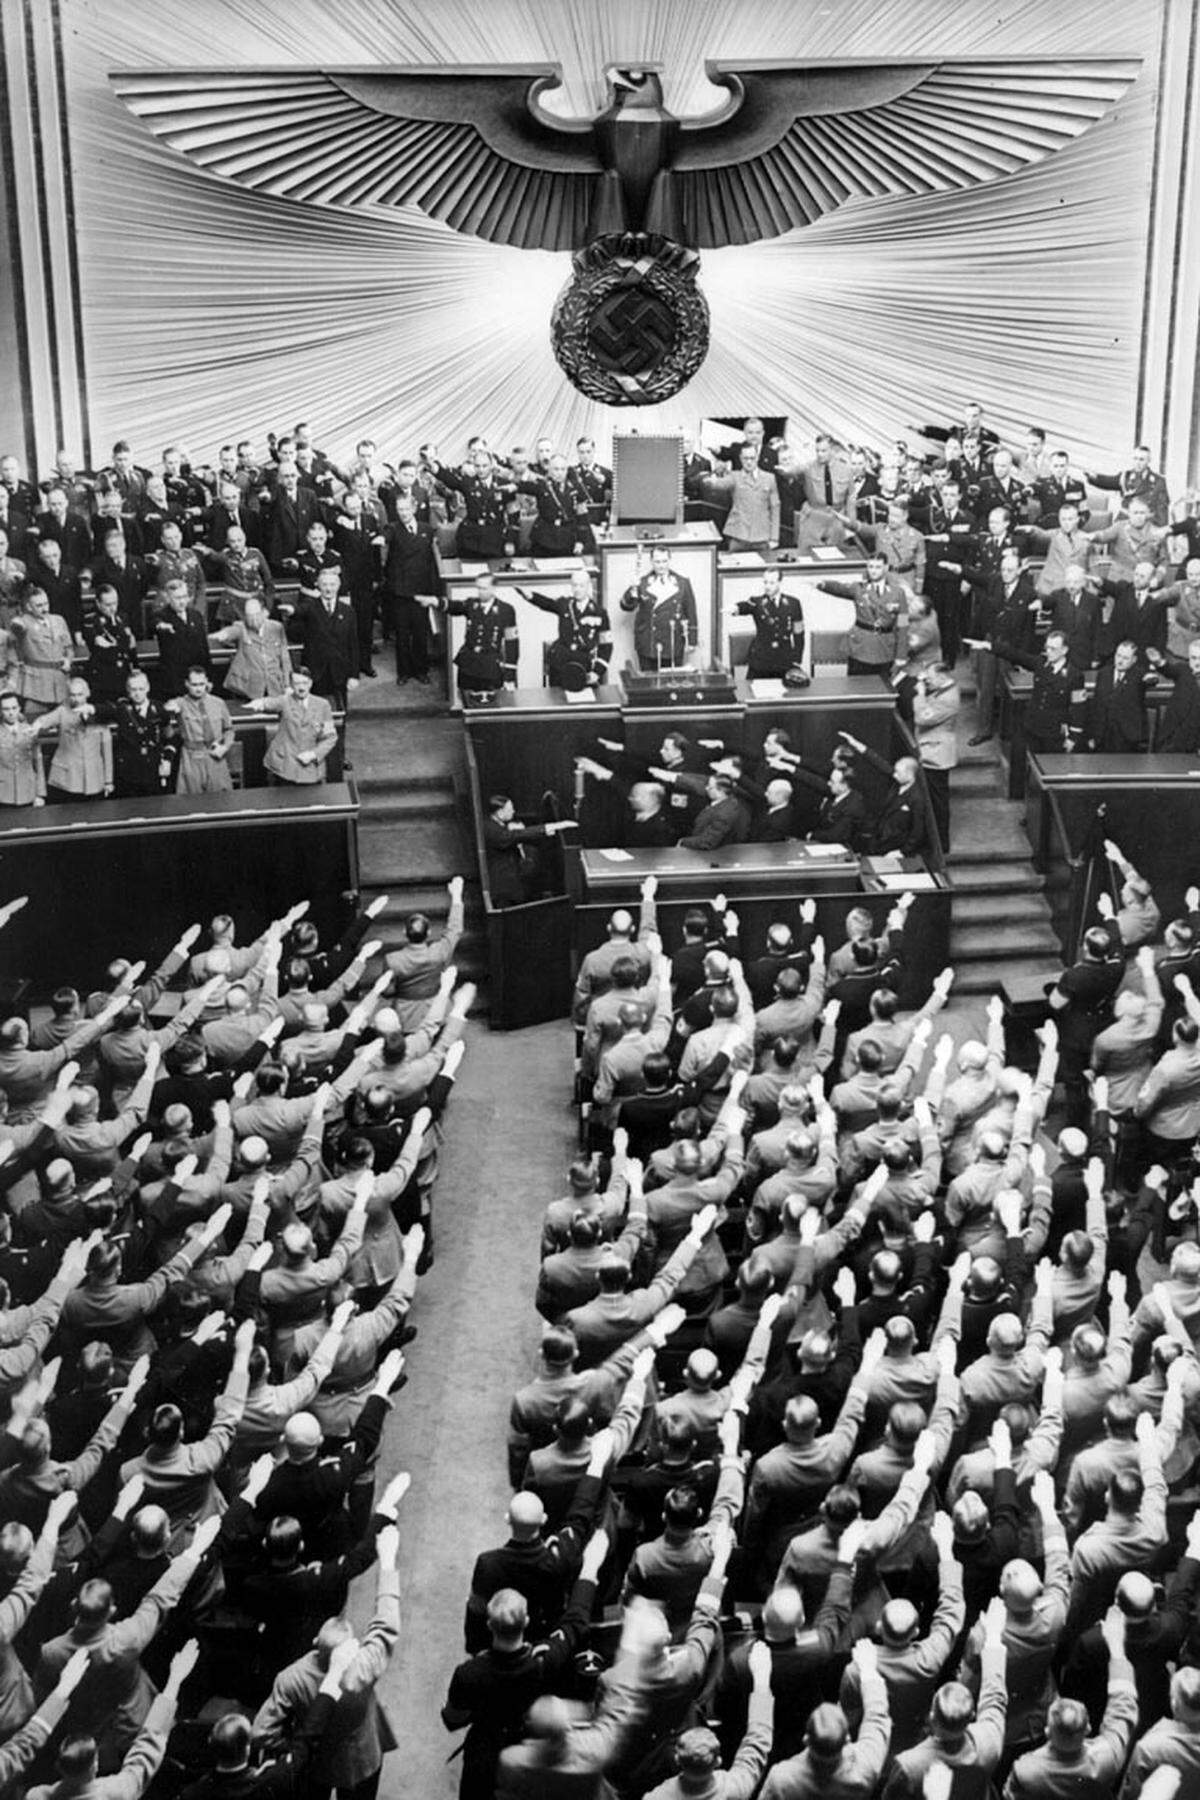 Sofort machen sich die Nationalsozialisten daran, politische Gegner zu verfolgen. Mehr als 10.000 Menschen werden verhaftet.Sechs Tage nach dem Brand wird die NSDAP bei der Reichstagswahl zur stärksten Partei. Mit der Verabschiedung des Ermächtigungsgesetzes, das der Regierung uneingeschränkte Gesetzgebungsbefugnisse gibt, ebnet Hitler am 24. März endgültig den Weg in die Diktatur.